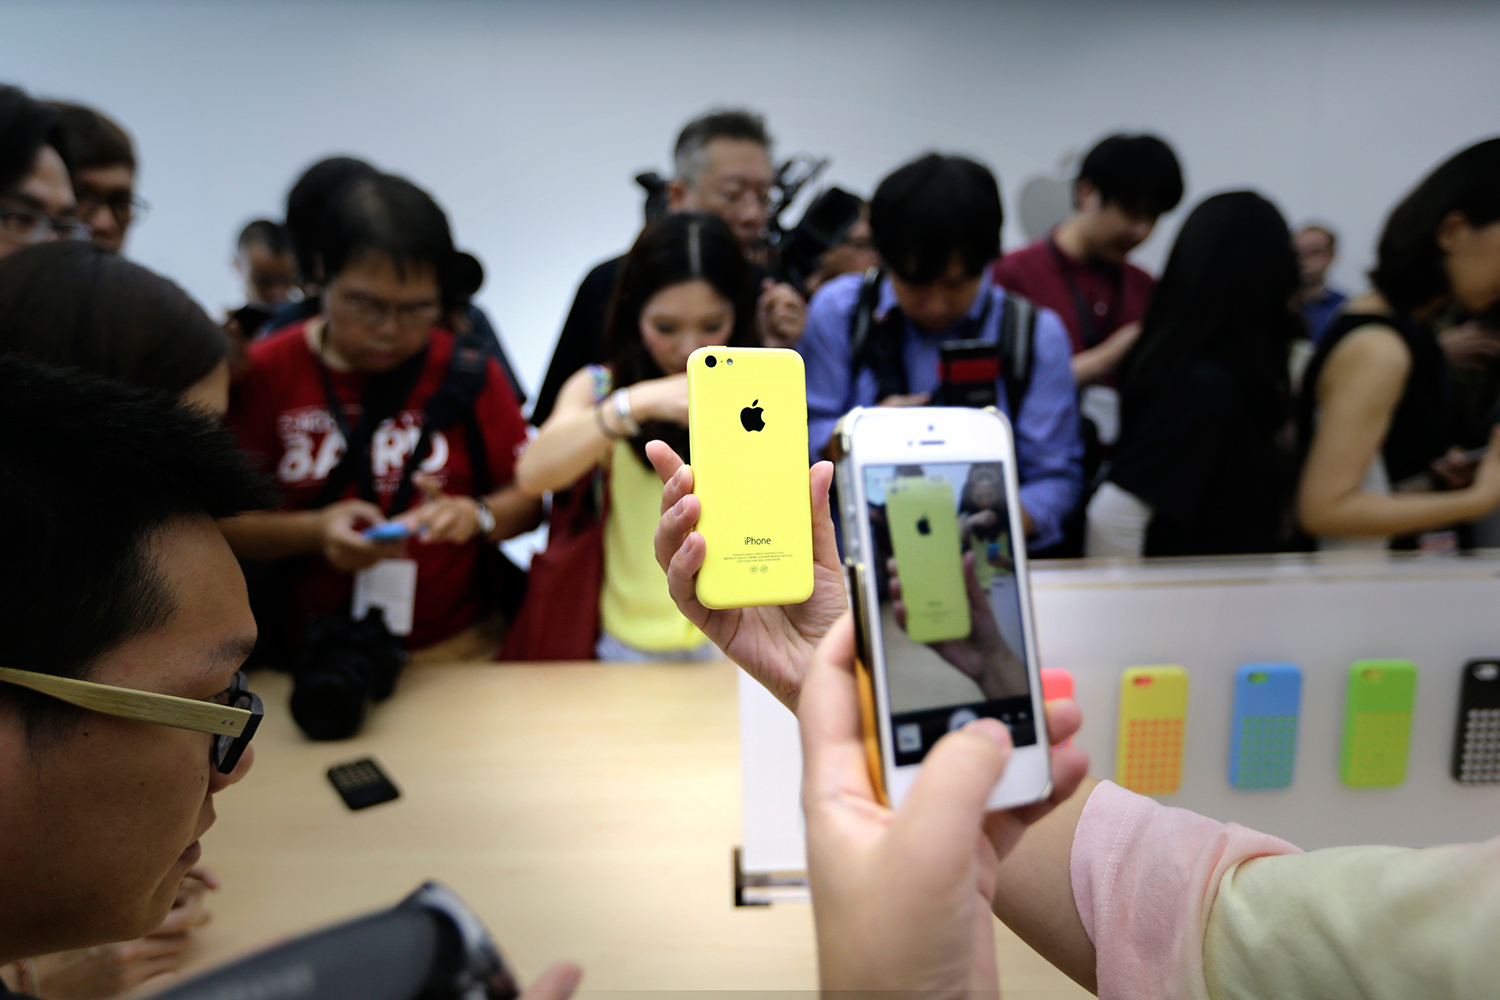 Jóvenes chinos venden sus órganos y espermatozoides para poder comprarse el iPhone 6S. #7dias